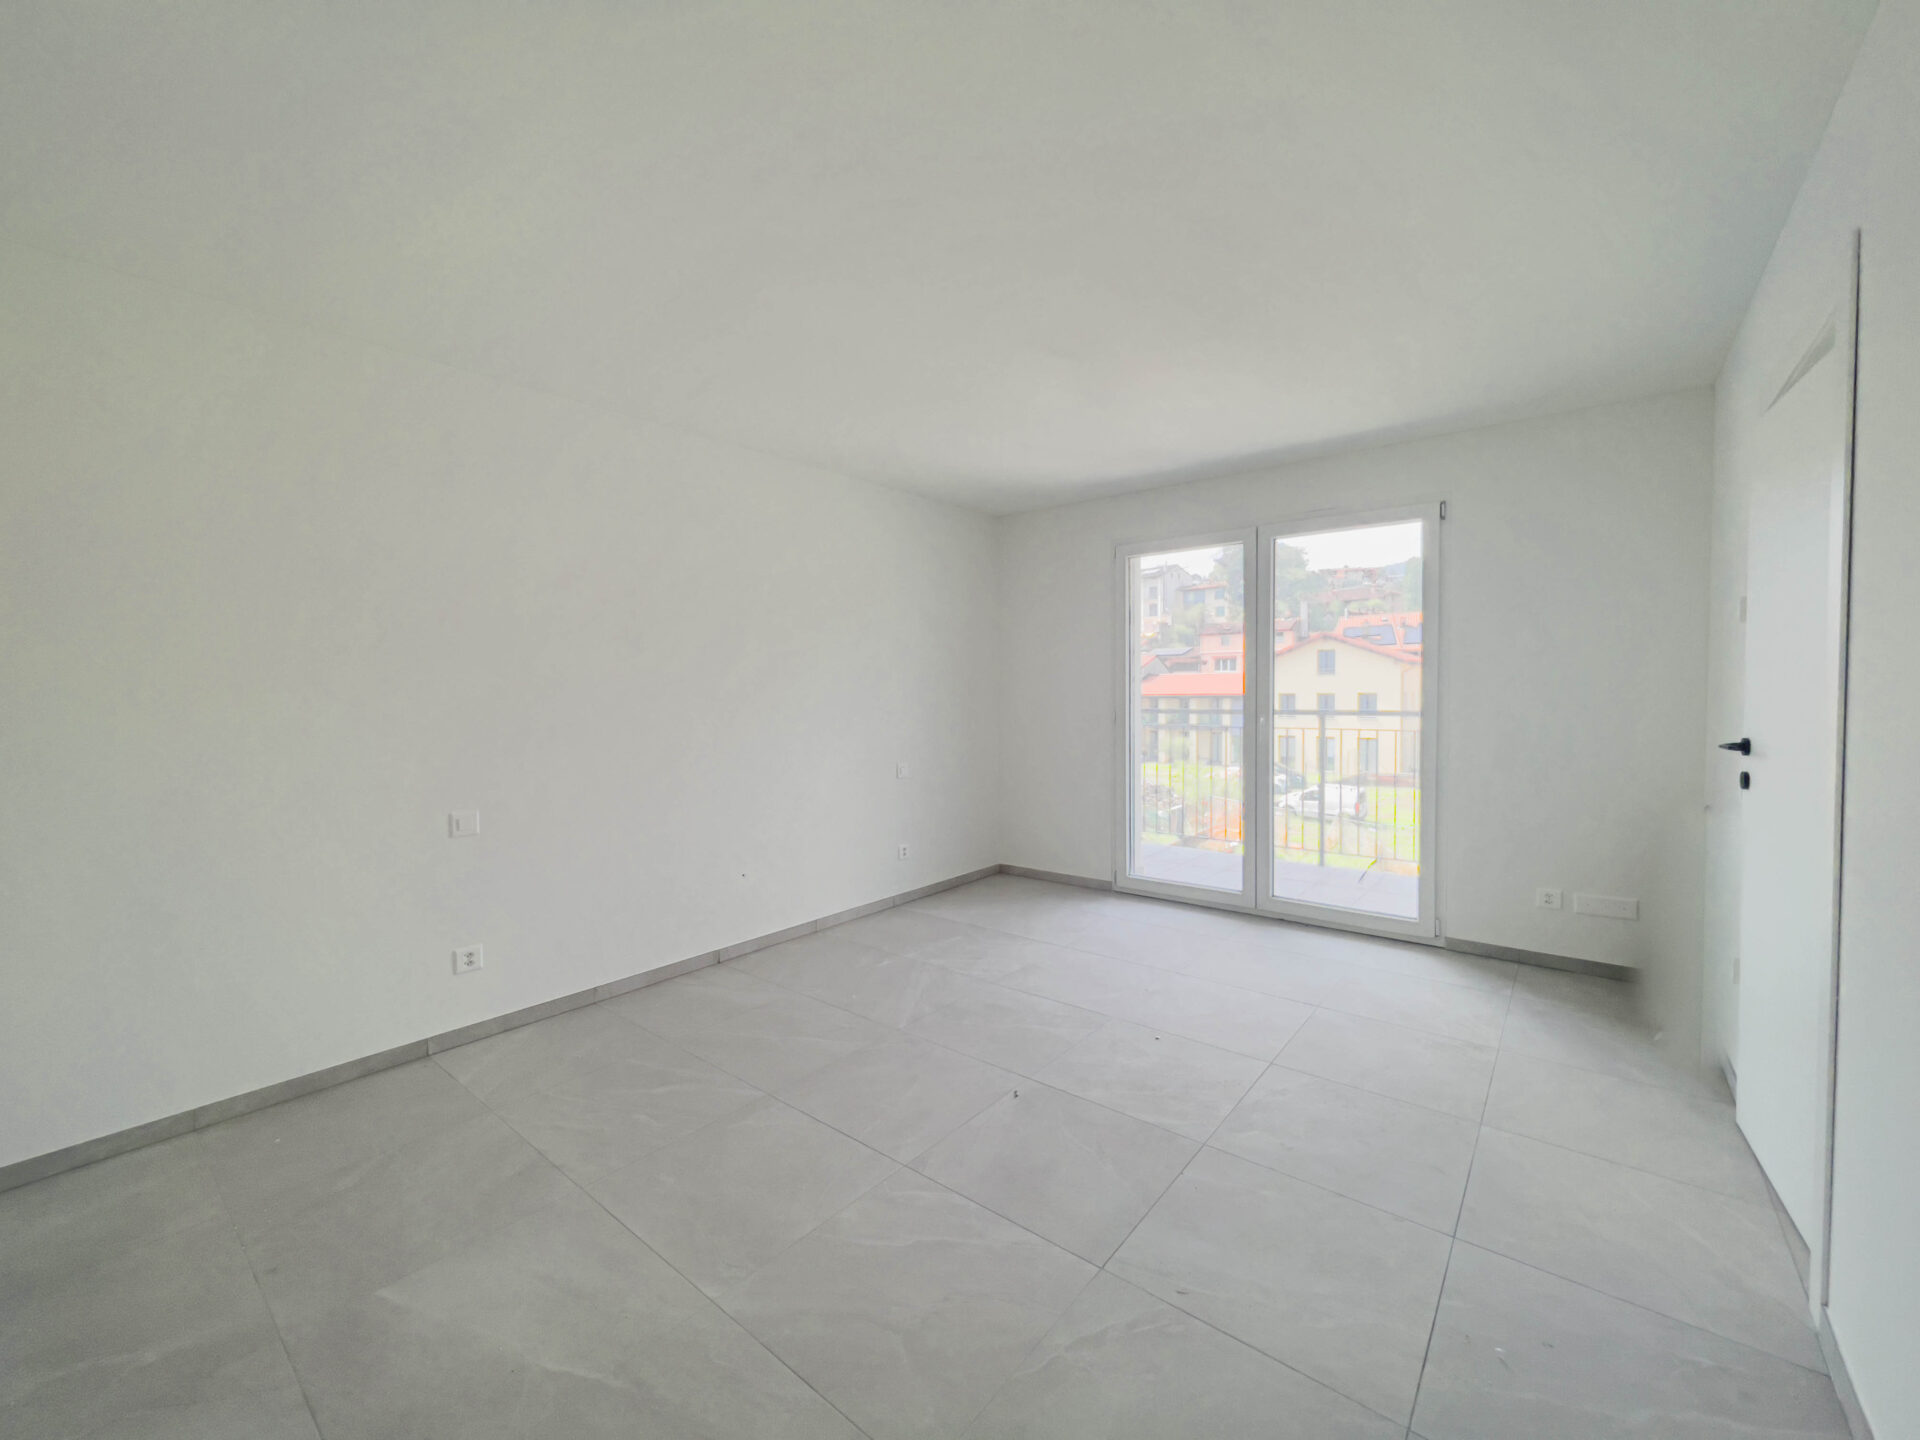 Neugebaute 2,5-Zimmer-Wohnung in Stabio zu verkaufen